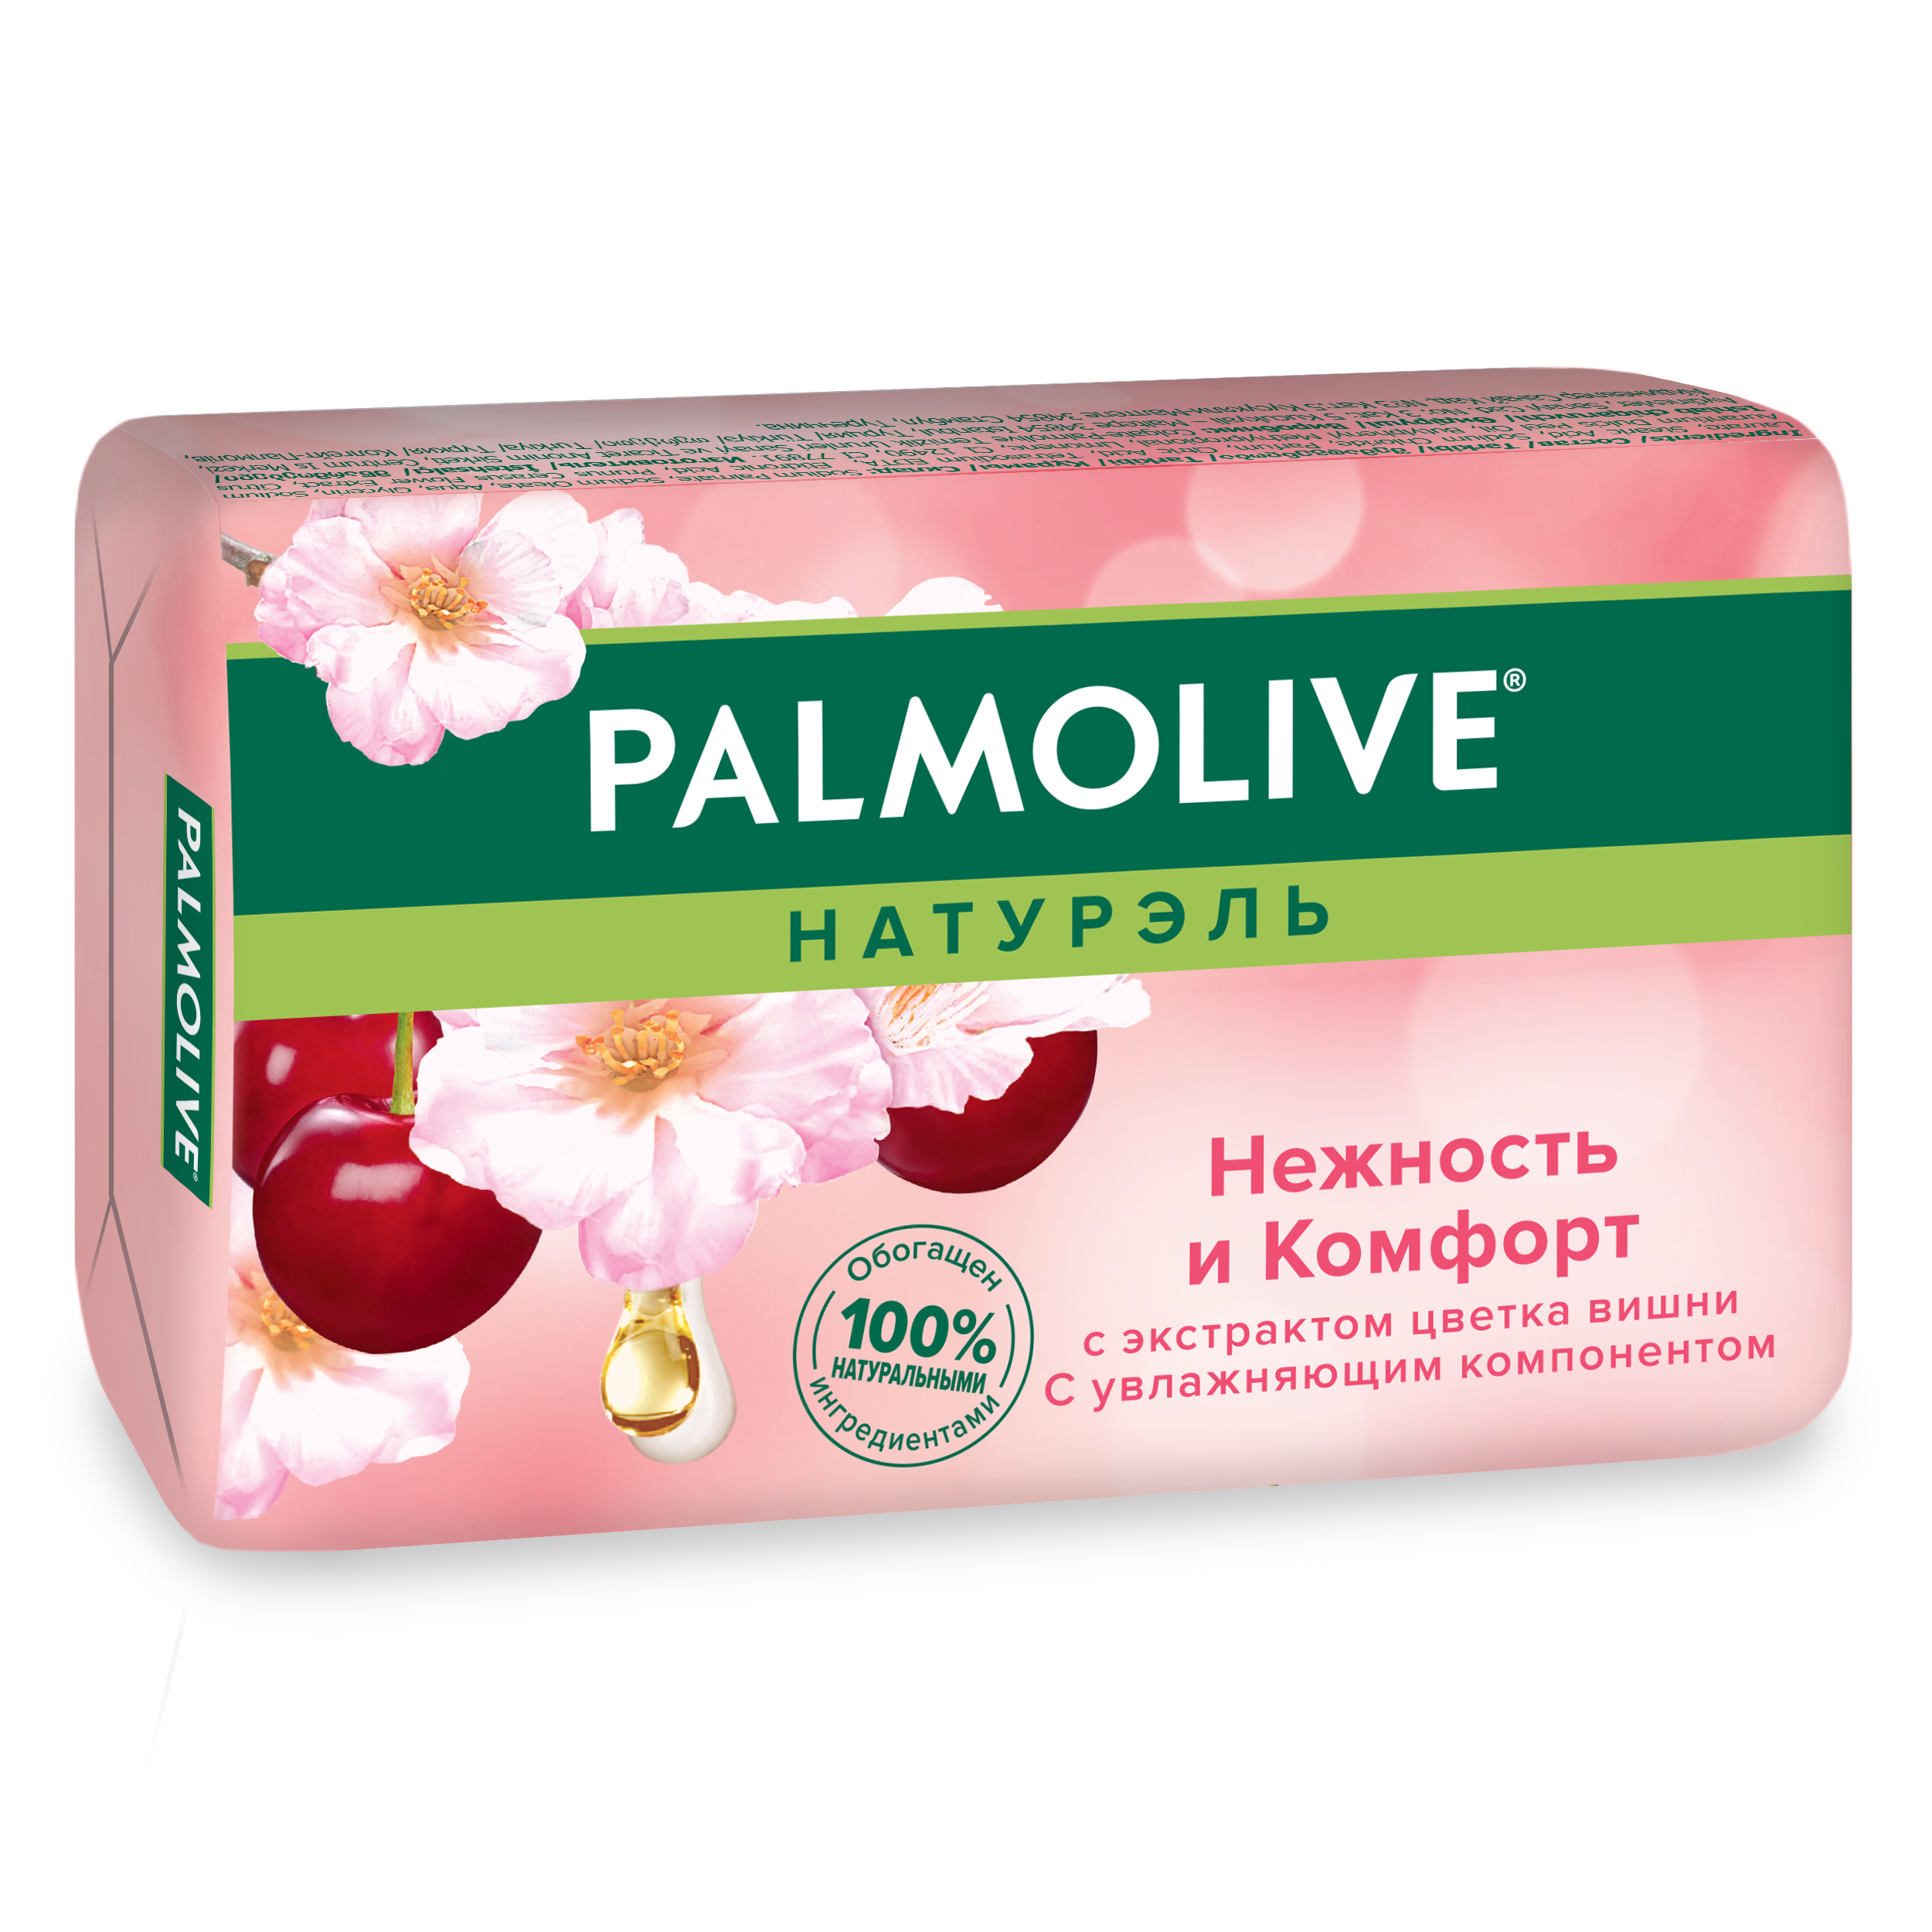 Косметическое мыло Palmolive Натурэль Нежность и комфорт Цветок вишни 90 г косметическое мыло palmolive натурэль роскошная мягкость 90гр